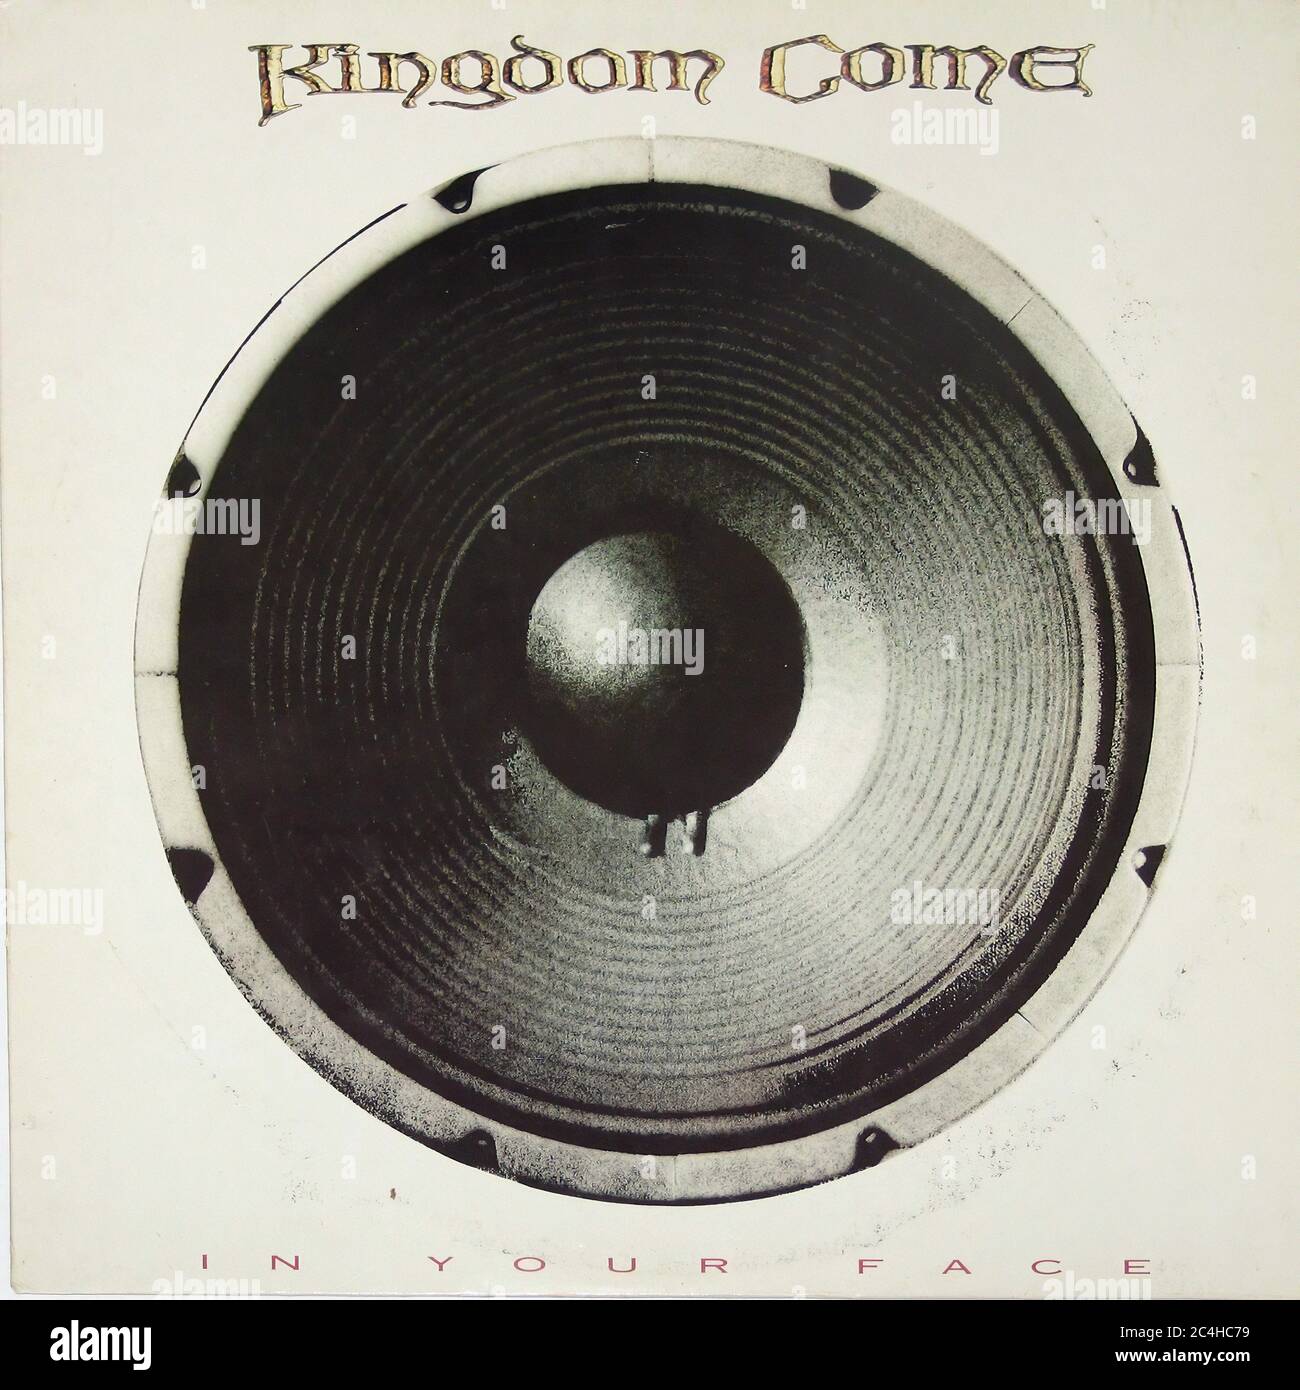 Regno come in tuo volto Polydor 839 192 Polygram Records 12'' vinile LP - vintage cover Foto Stock